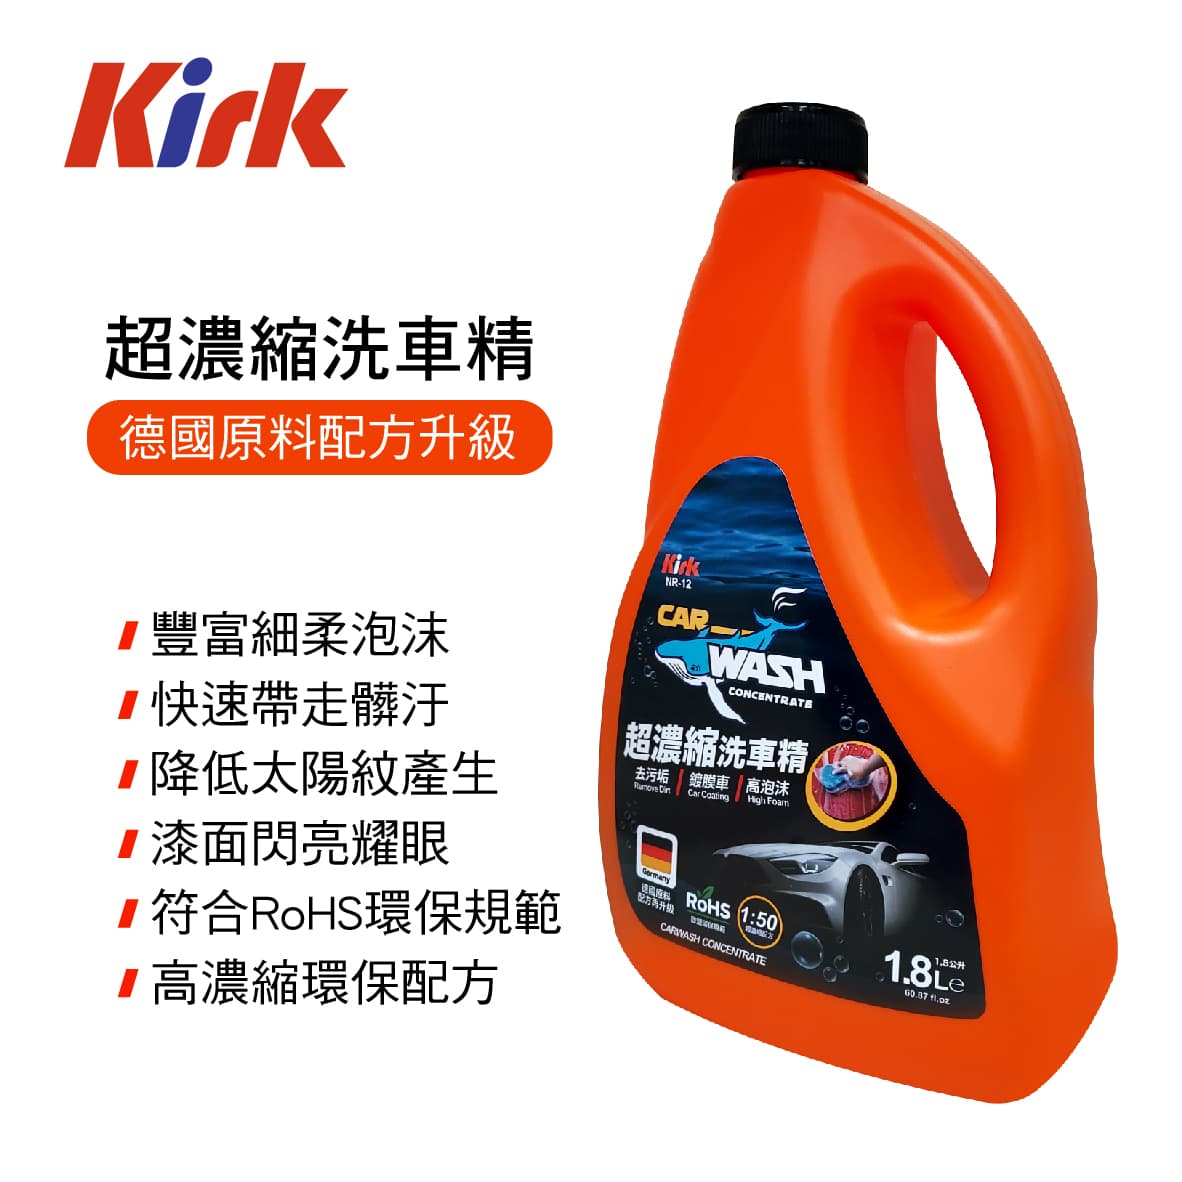 真便宜 KIRK柯克 NR-12 超濃縮洗車精1800ml